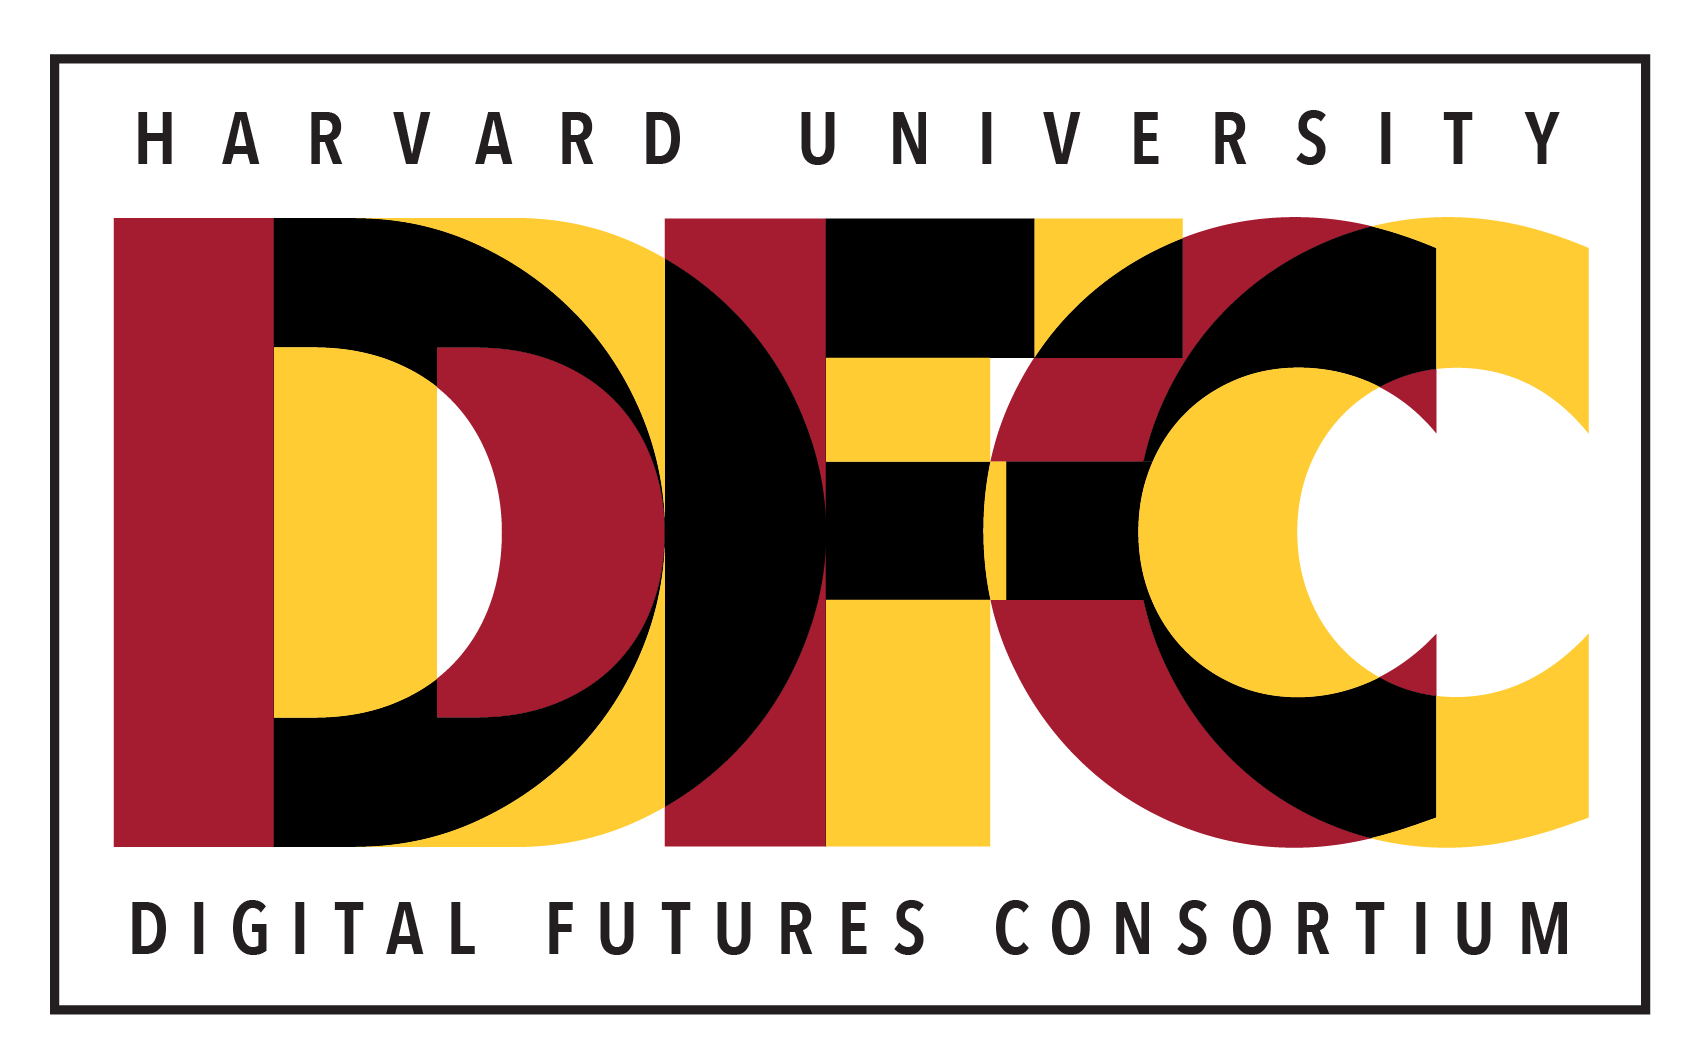 Harvard University Digital Futures Consortium